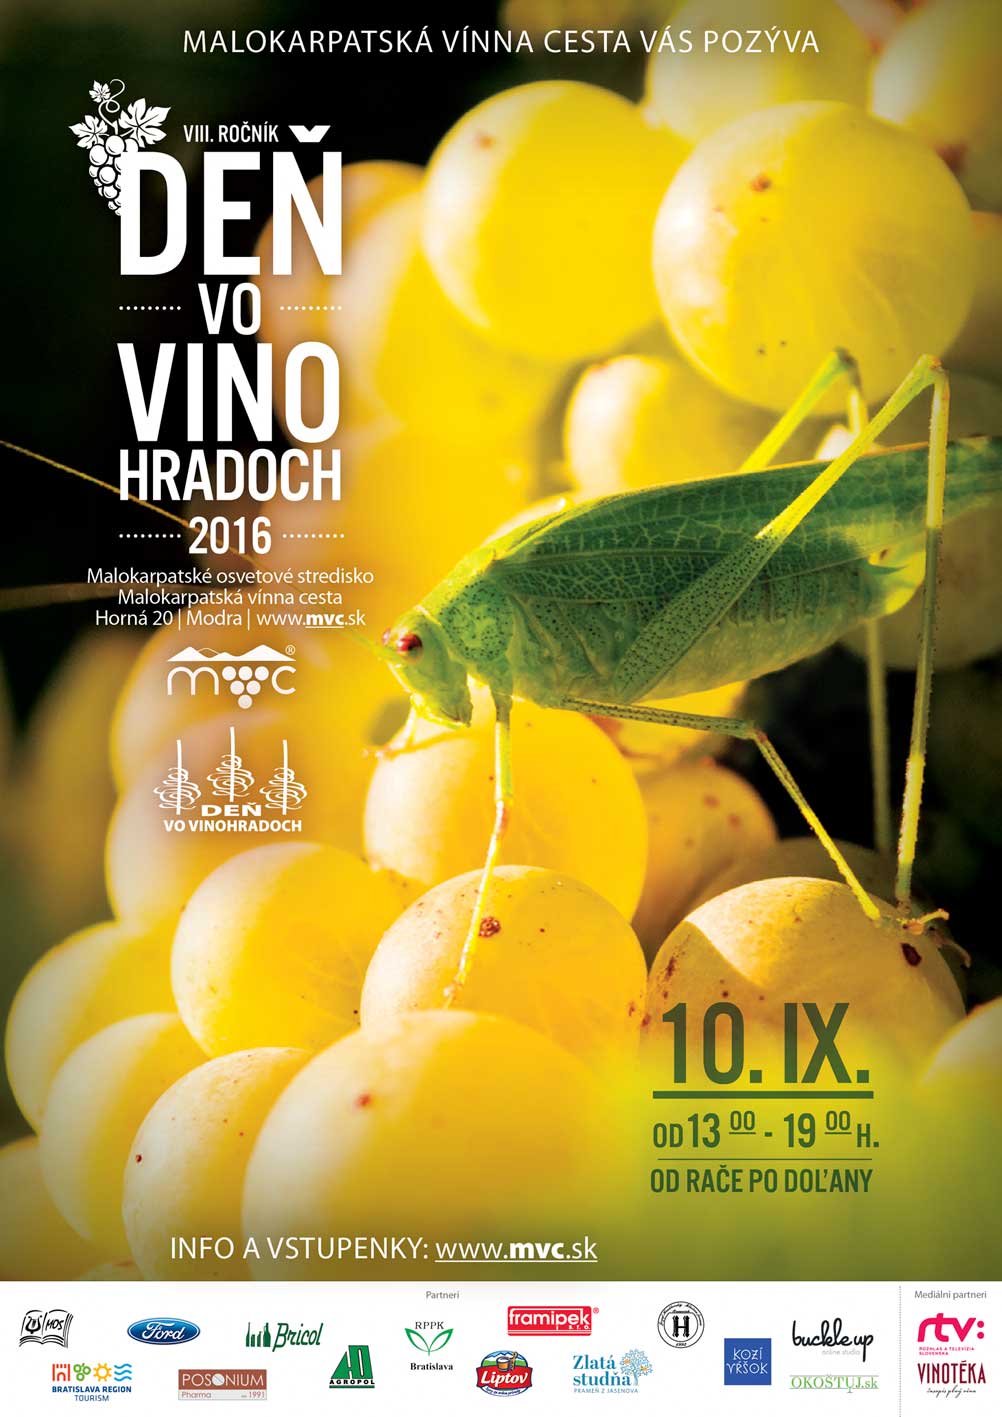 De vo vinohradoch 2016 - 8. ronk